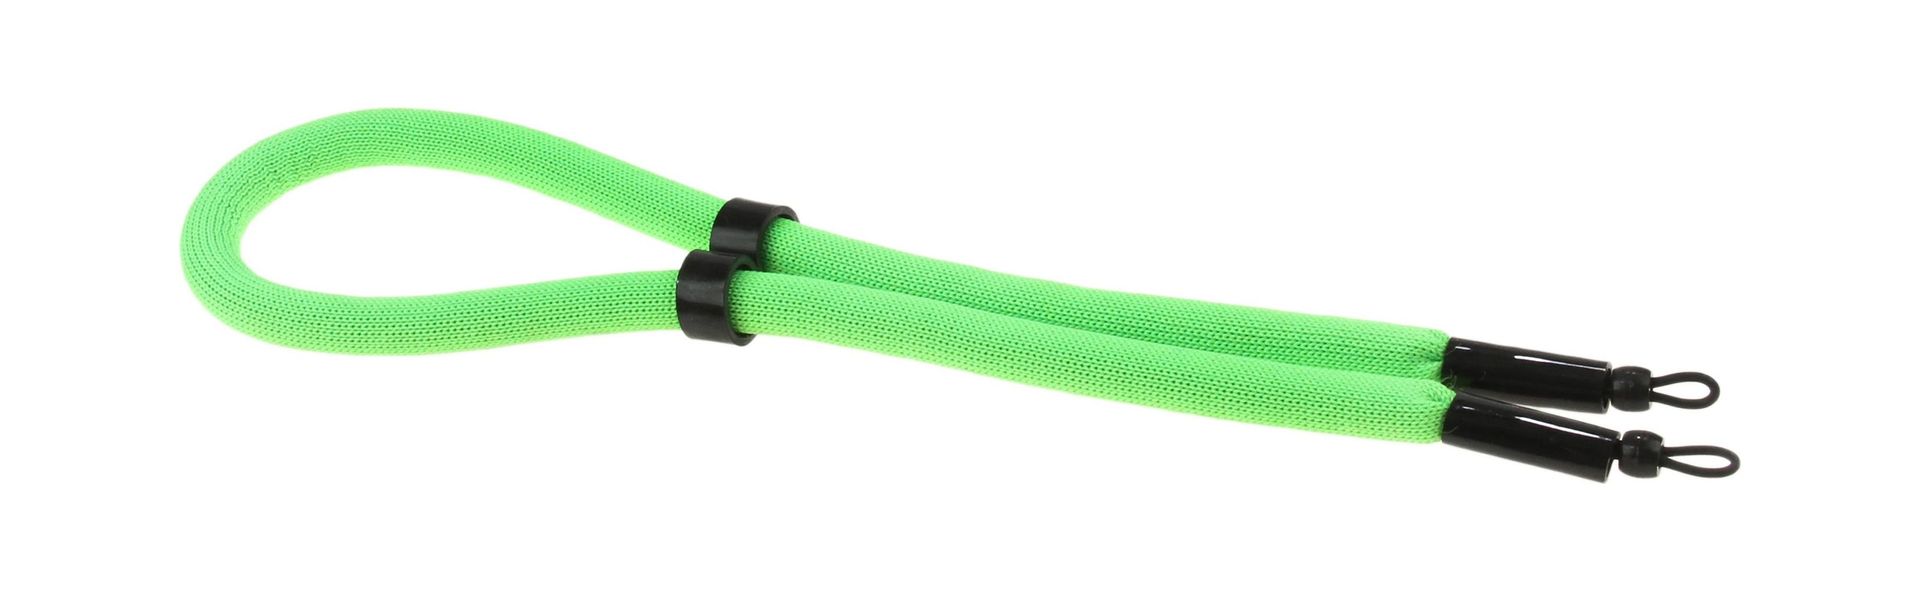 Ремешок плавающий для солнцезащитных очков, зеленый A2281 ремешок плавающий для солнцезащитных очков фиолетовый a2286